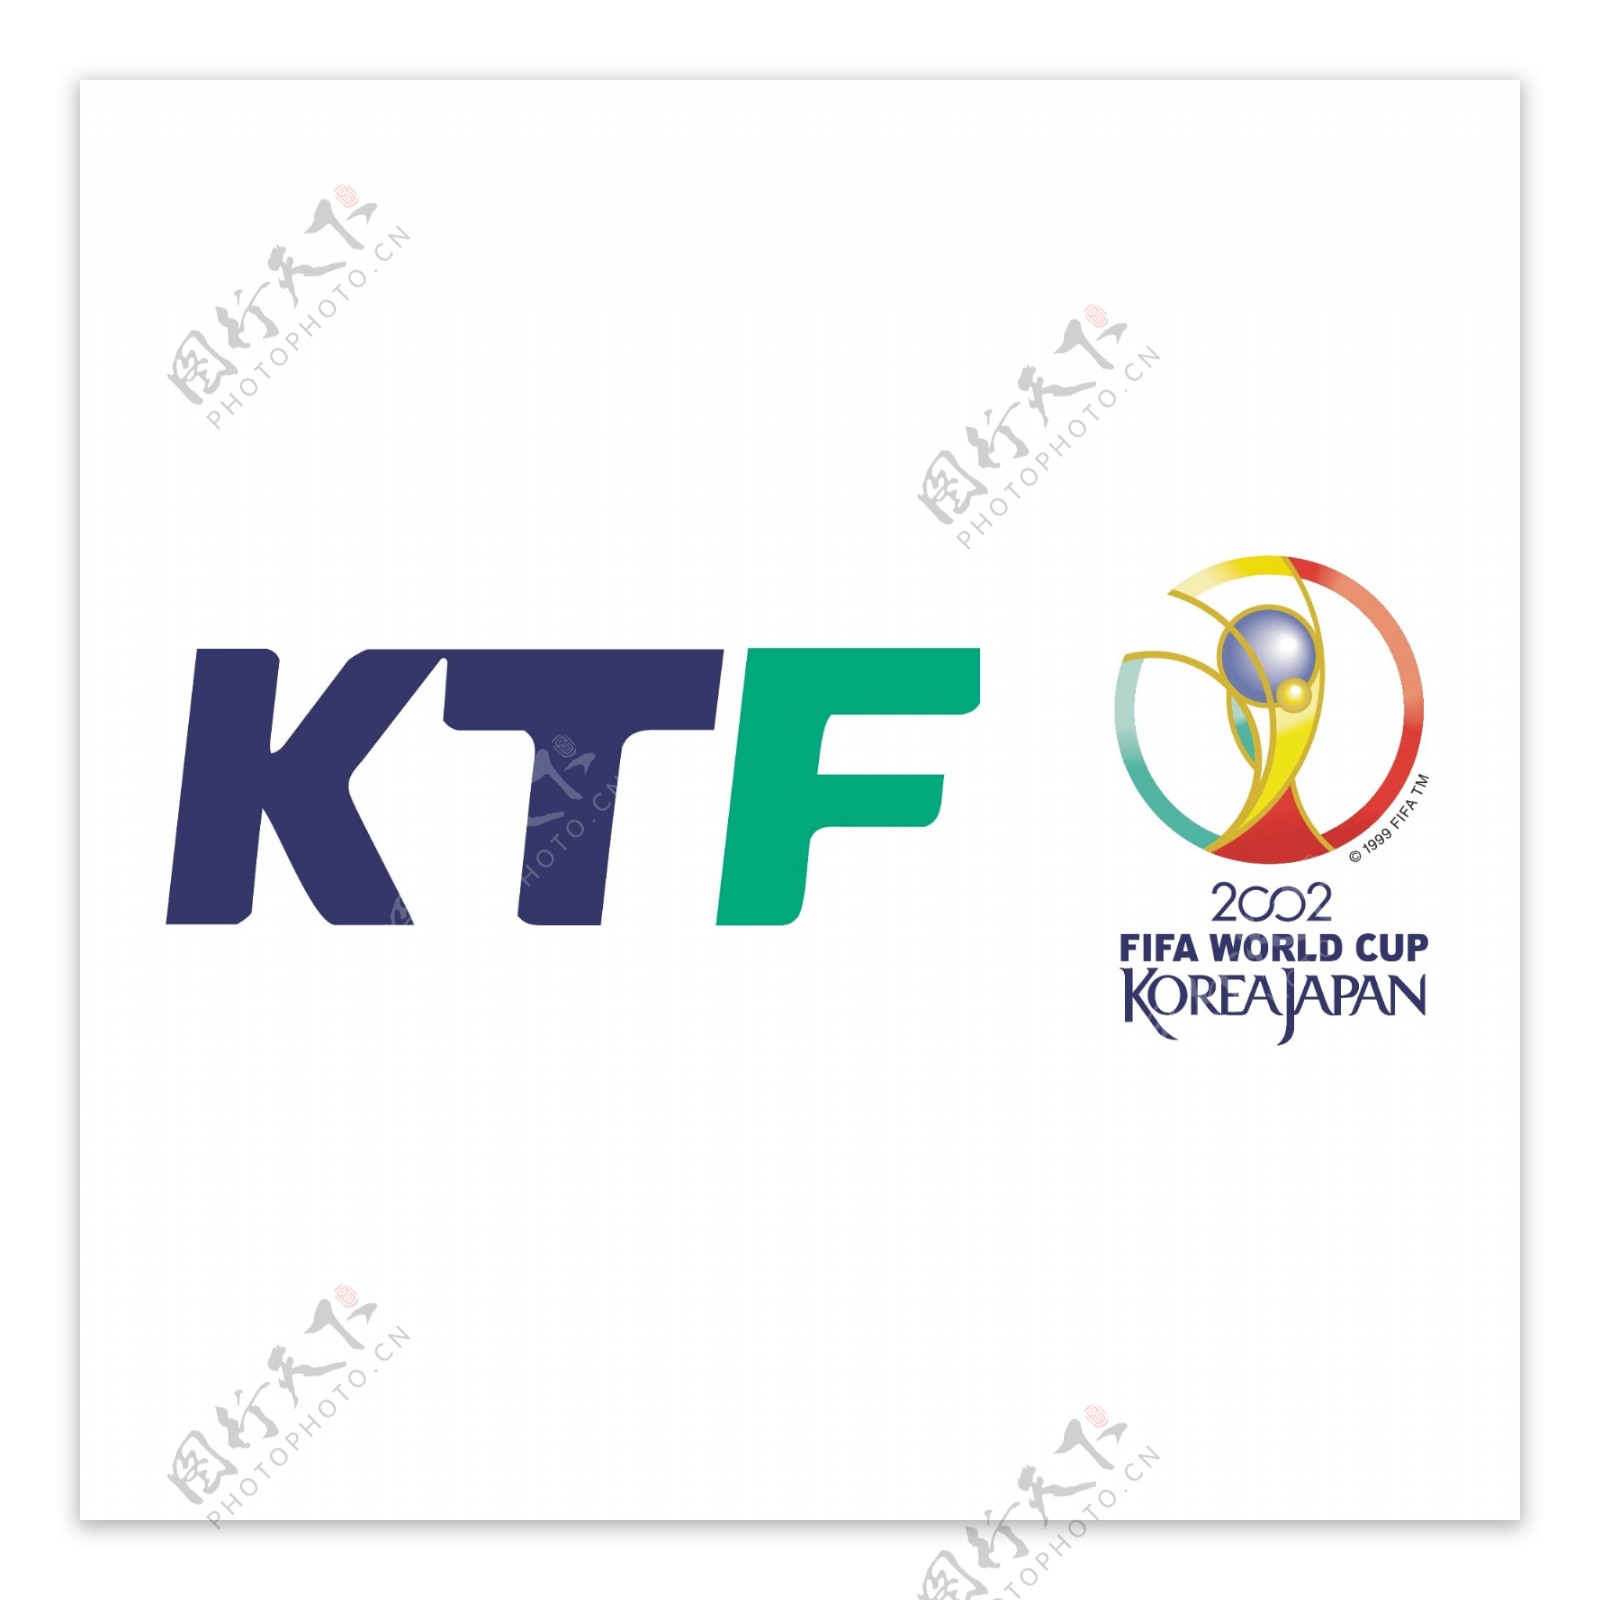 KTF2002世界杯的官方合作伙伴